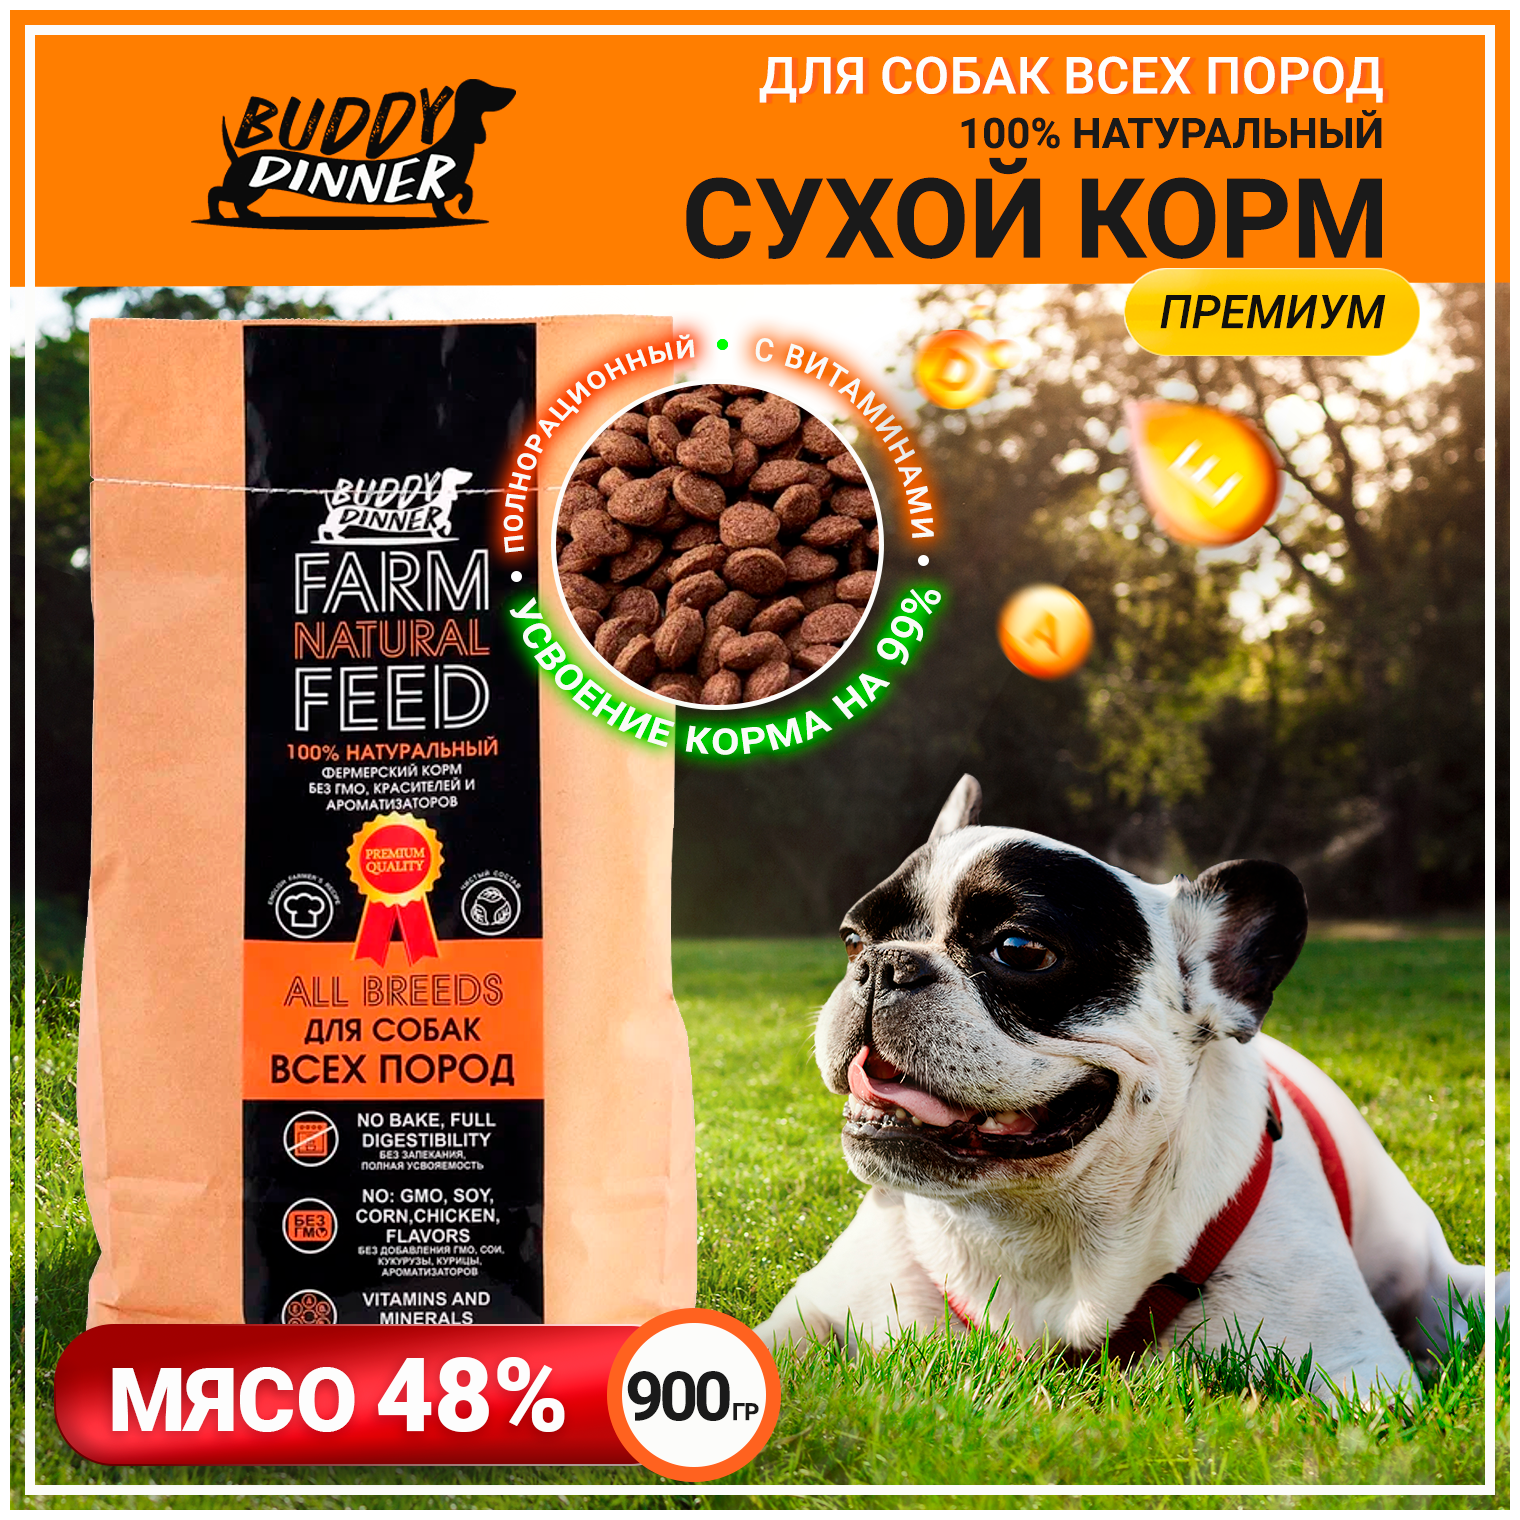 Корм для собак средних и крупных пород BUDDY DINNER premium класса ORANGE LINE Hypoallergenic, полнорационный, 100% натуральный состав, с говядиной, 900 г